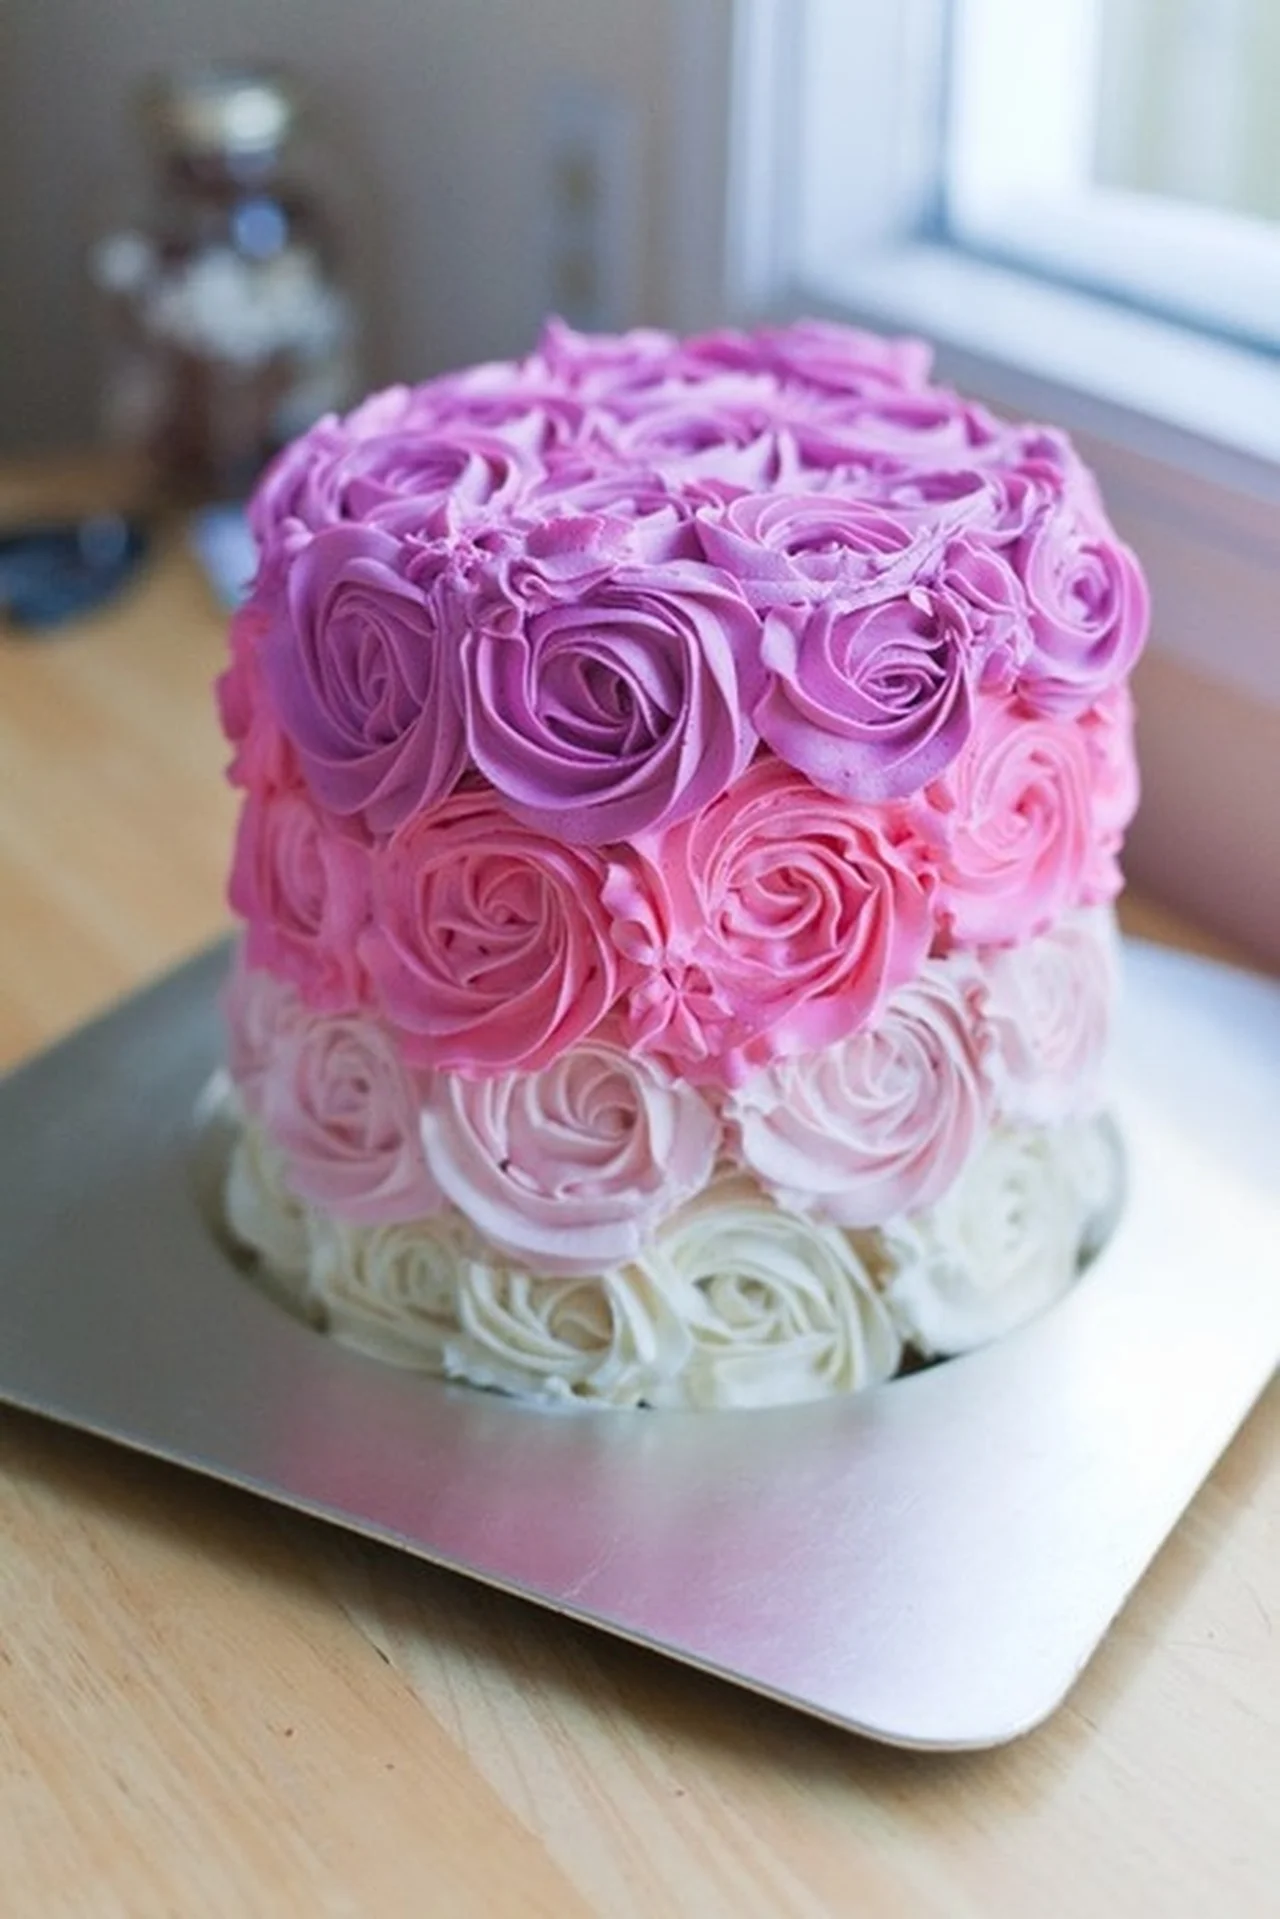 Piękny tort. Co za kolory